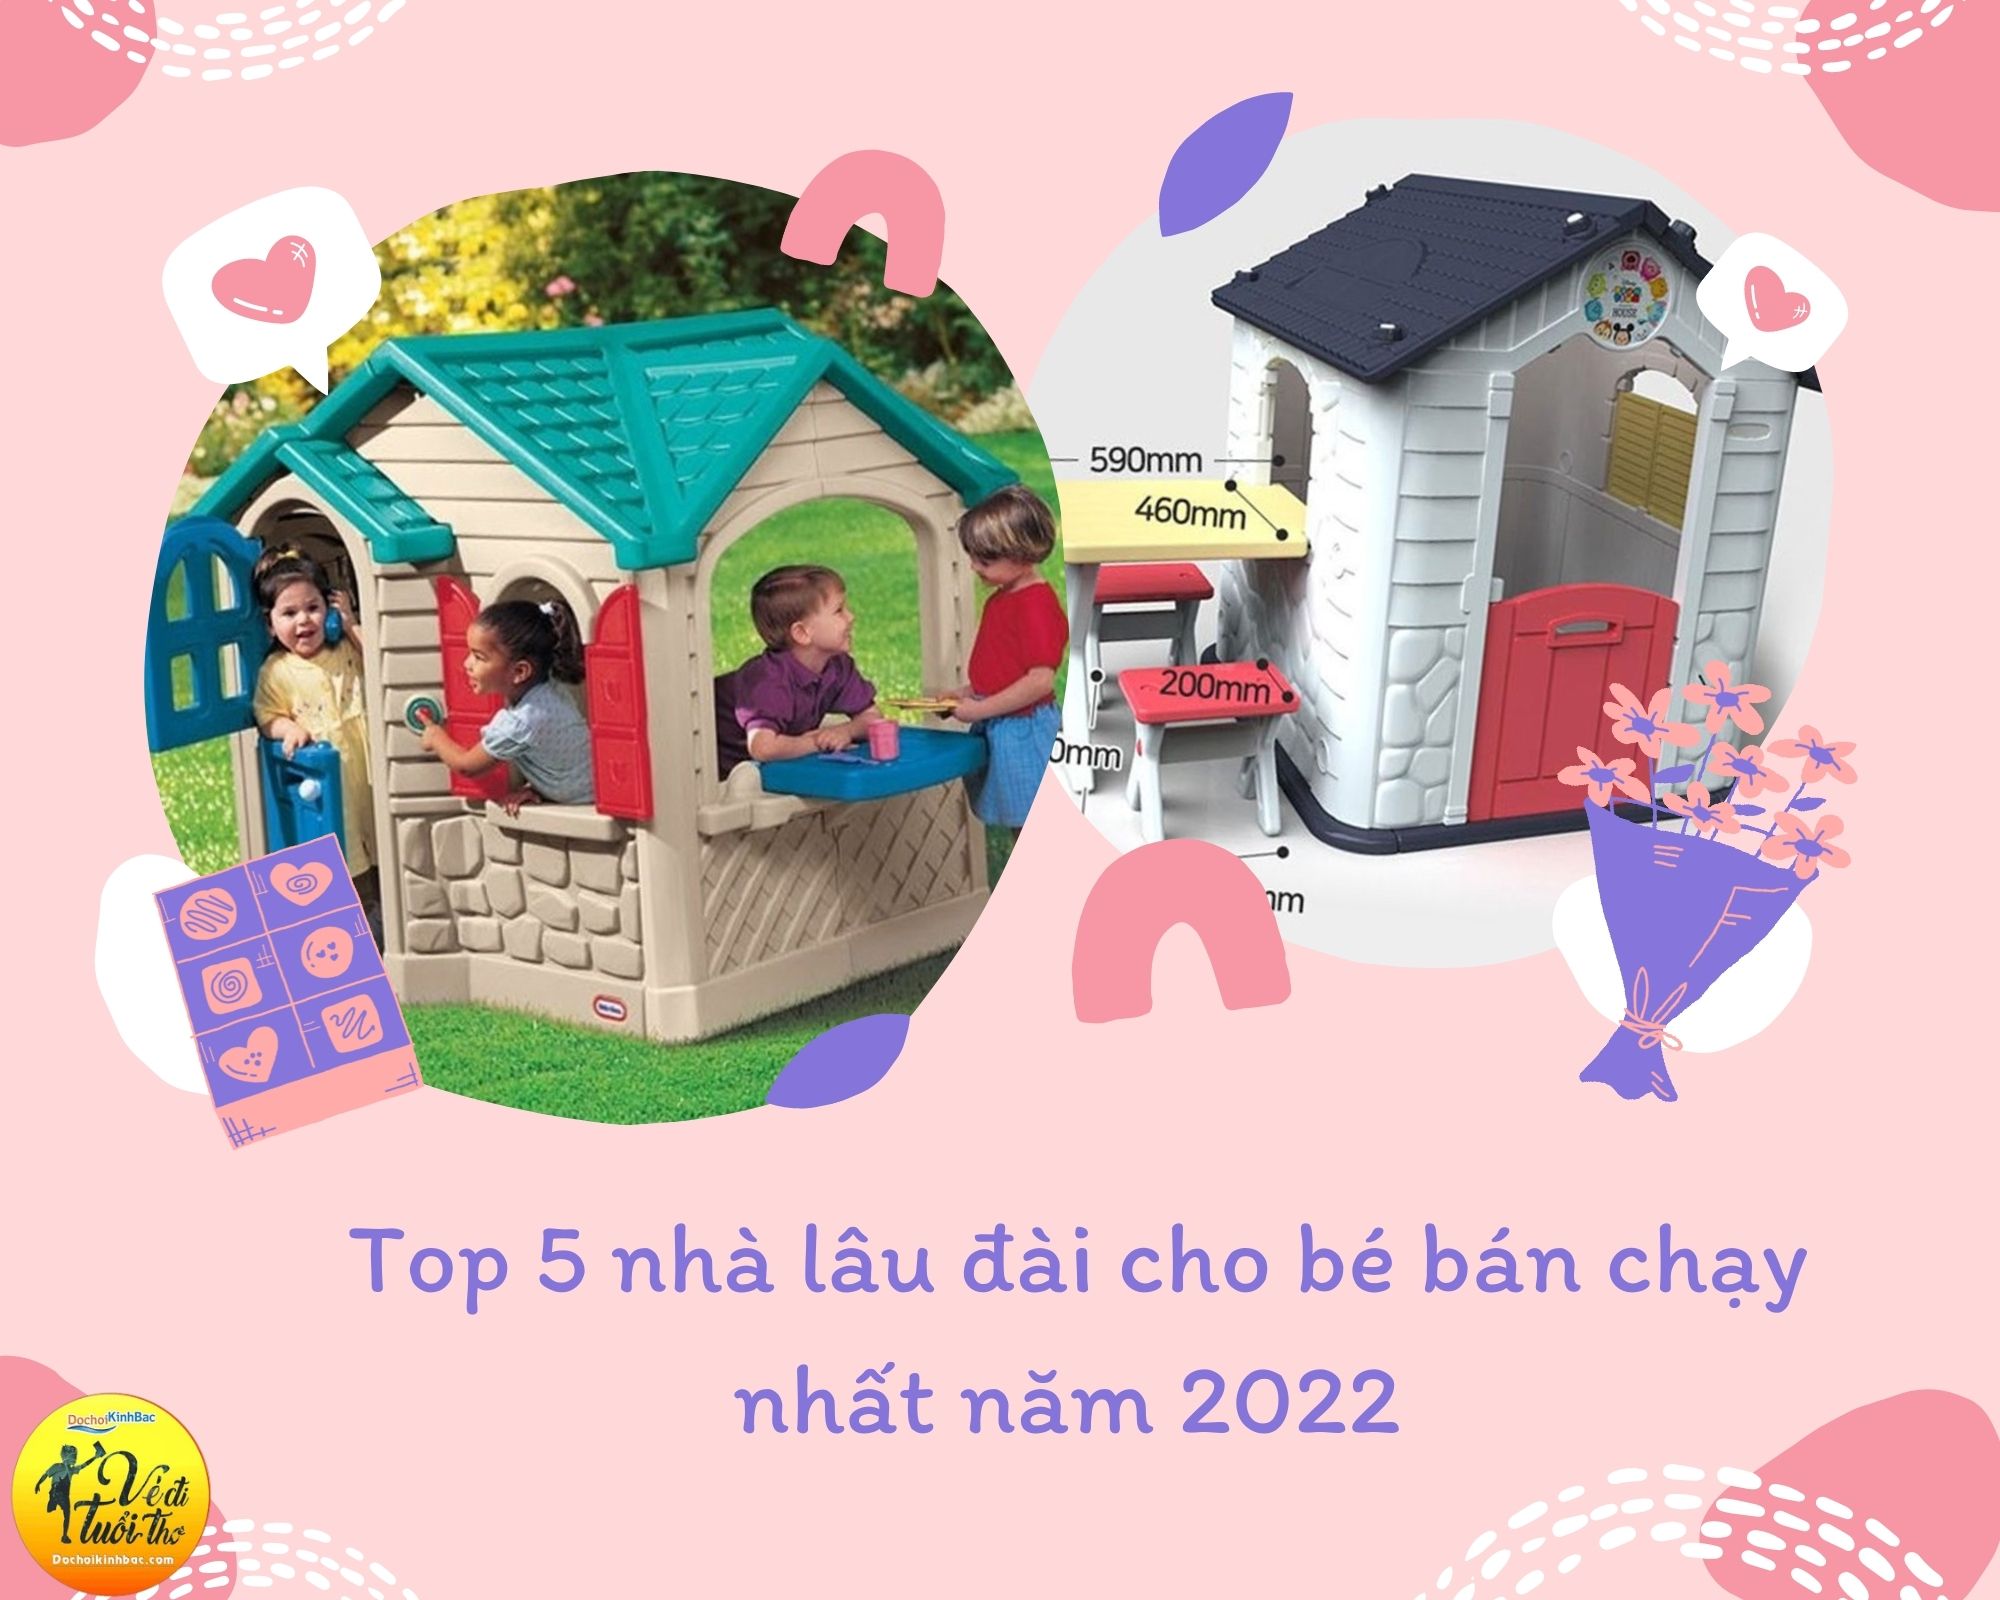 Top 5 nhà lâu đài cho bé bán chạy nhất năm 2022 tại Cam Đường-tỉnh Lào Cai